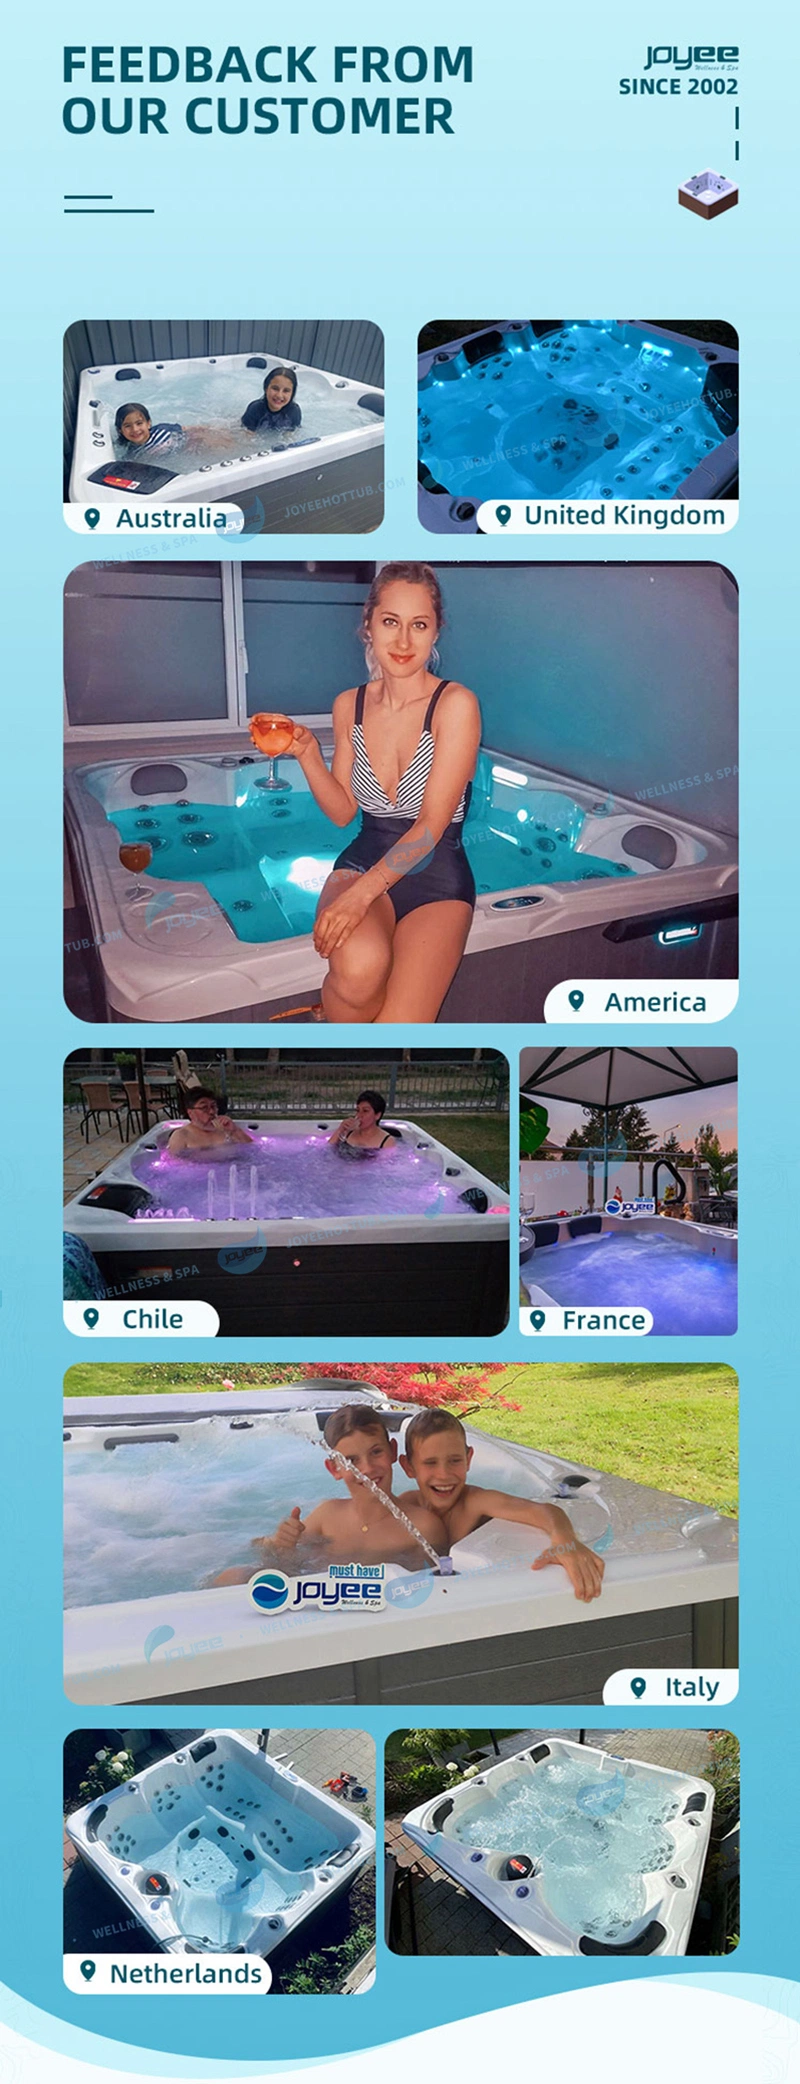 Joyee 6 Person Acrylic Bathtub Jets SPA Pool Hot Tub